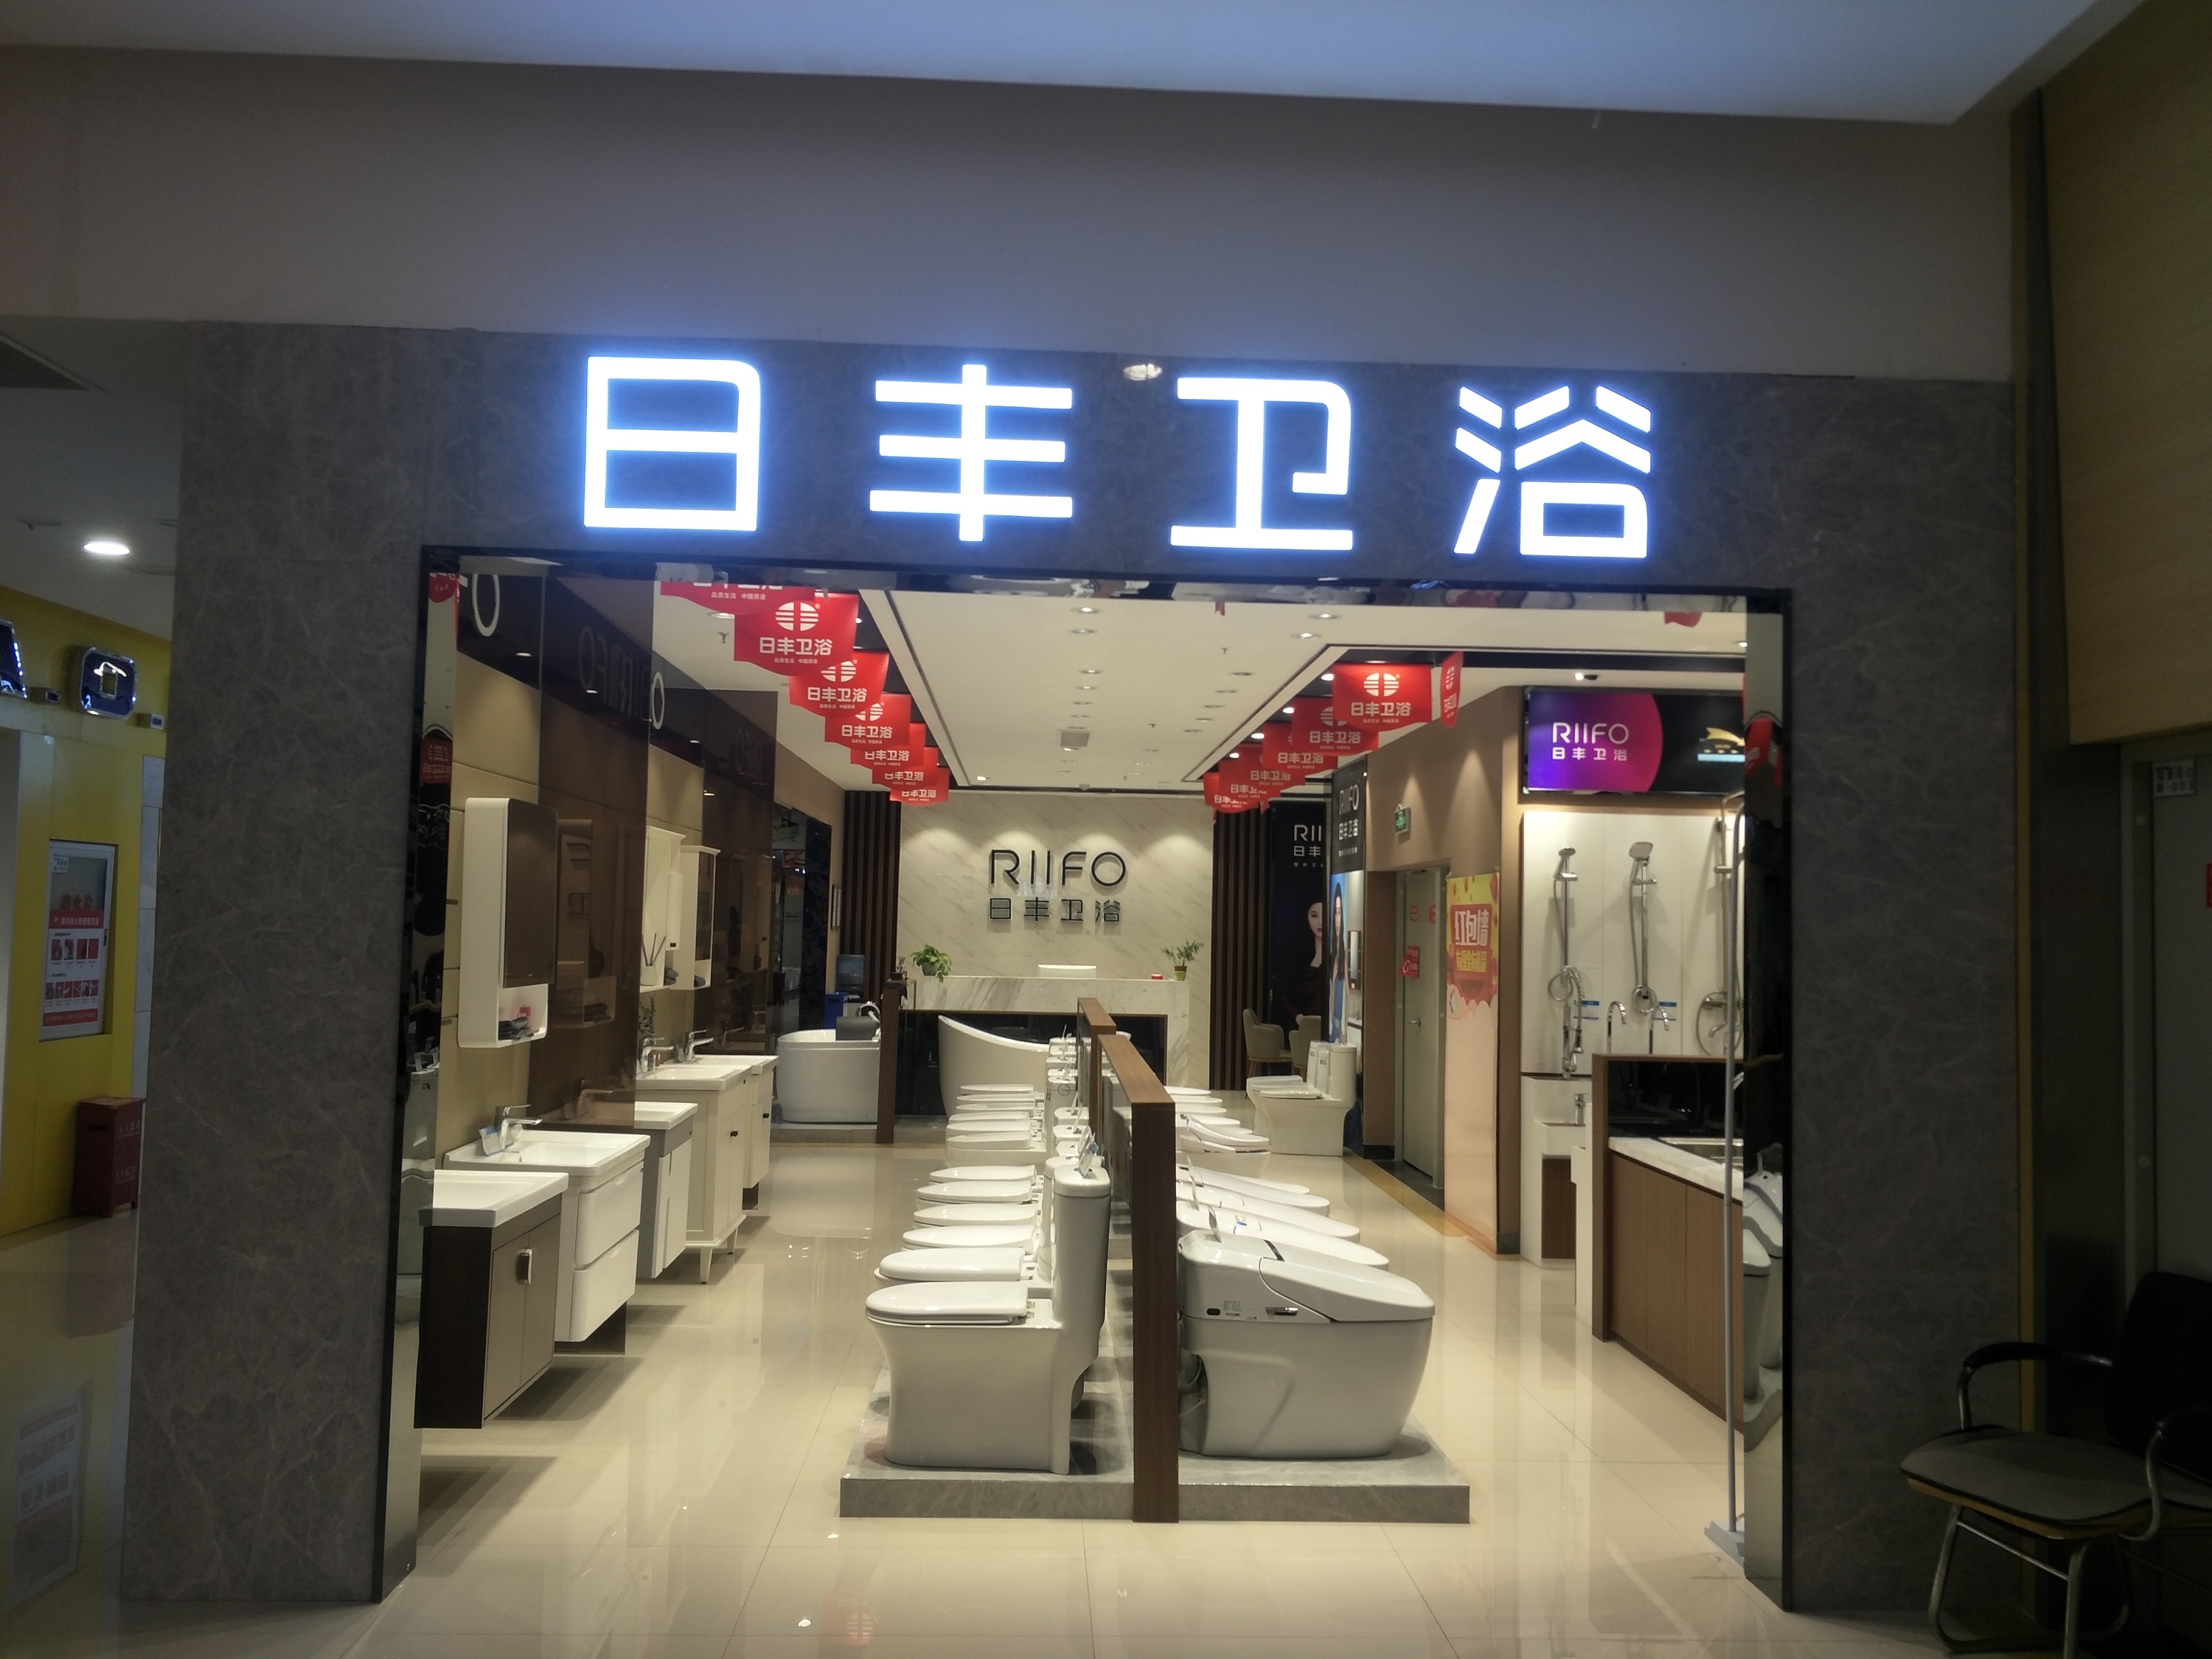 卫浴店面装修怎么设计?上海汉斯格雅3层装饰做示范 - 本地资讯 - 装一网